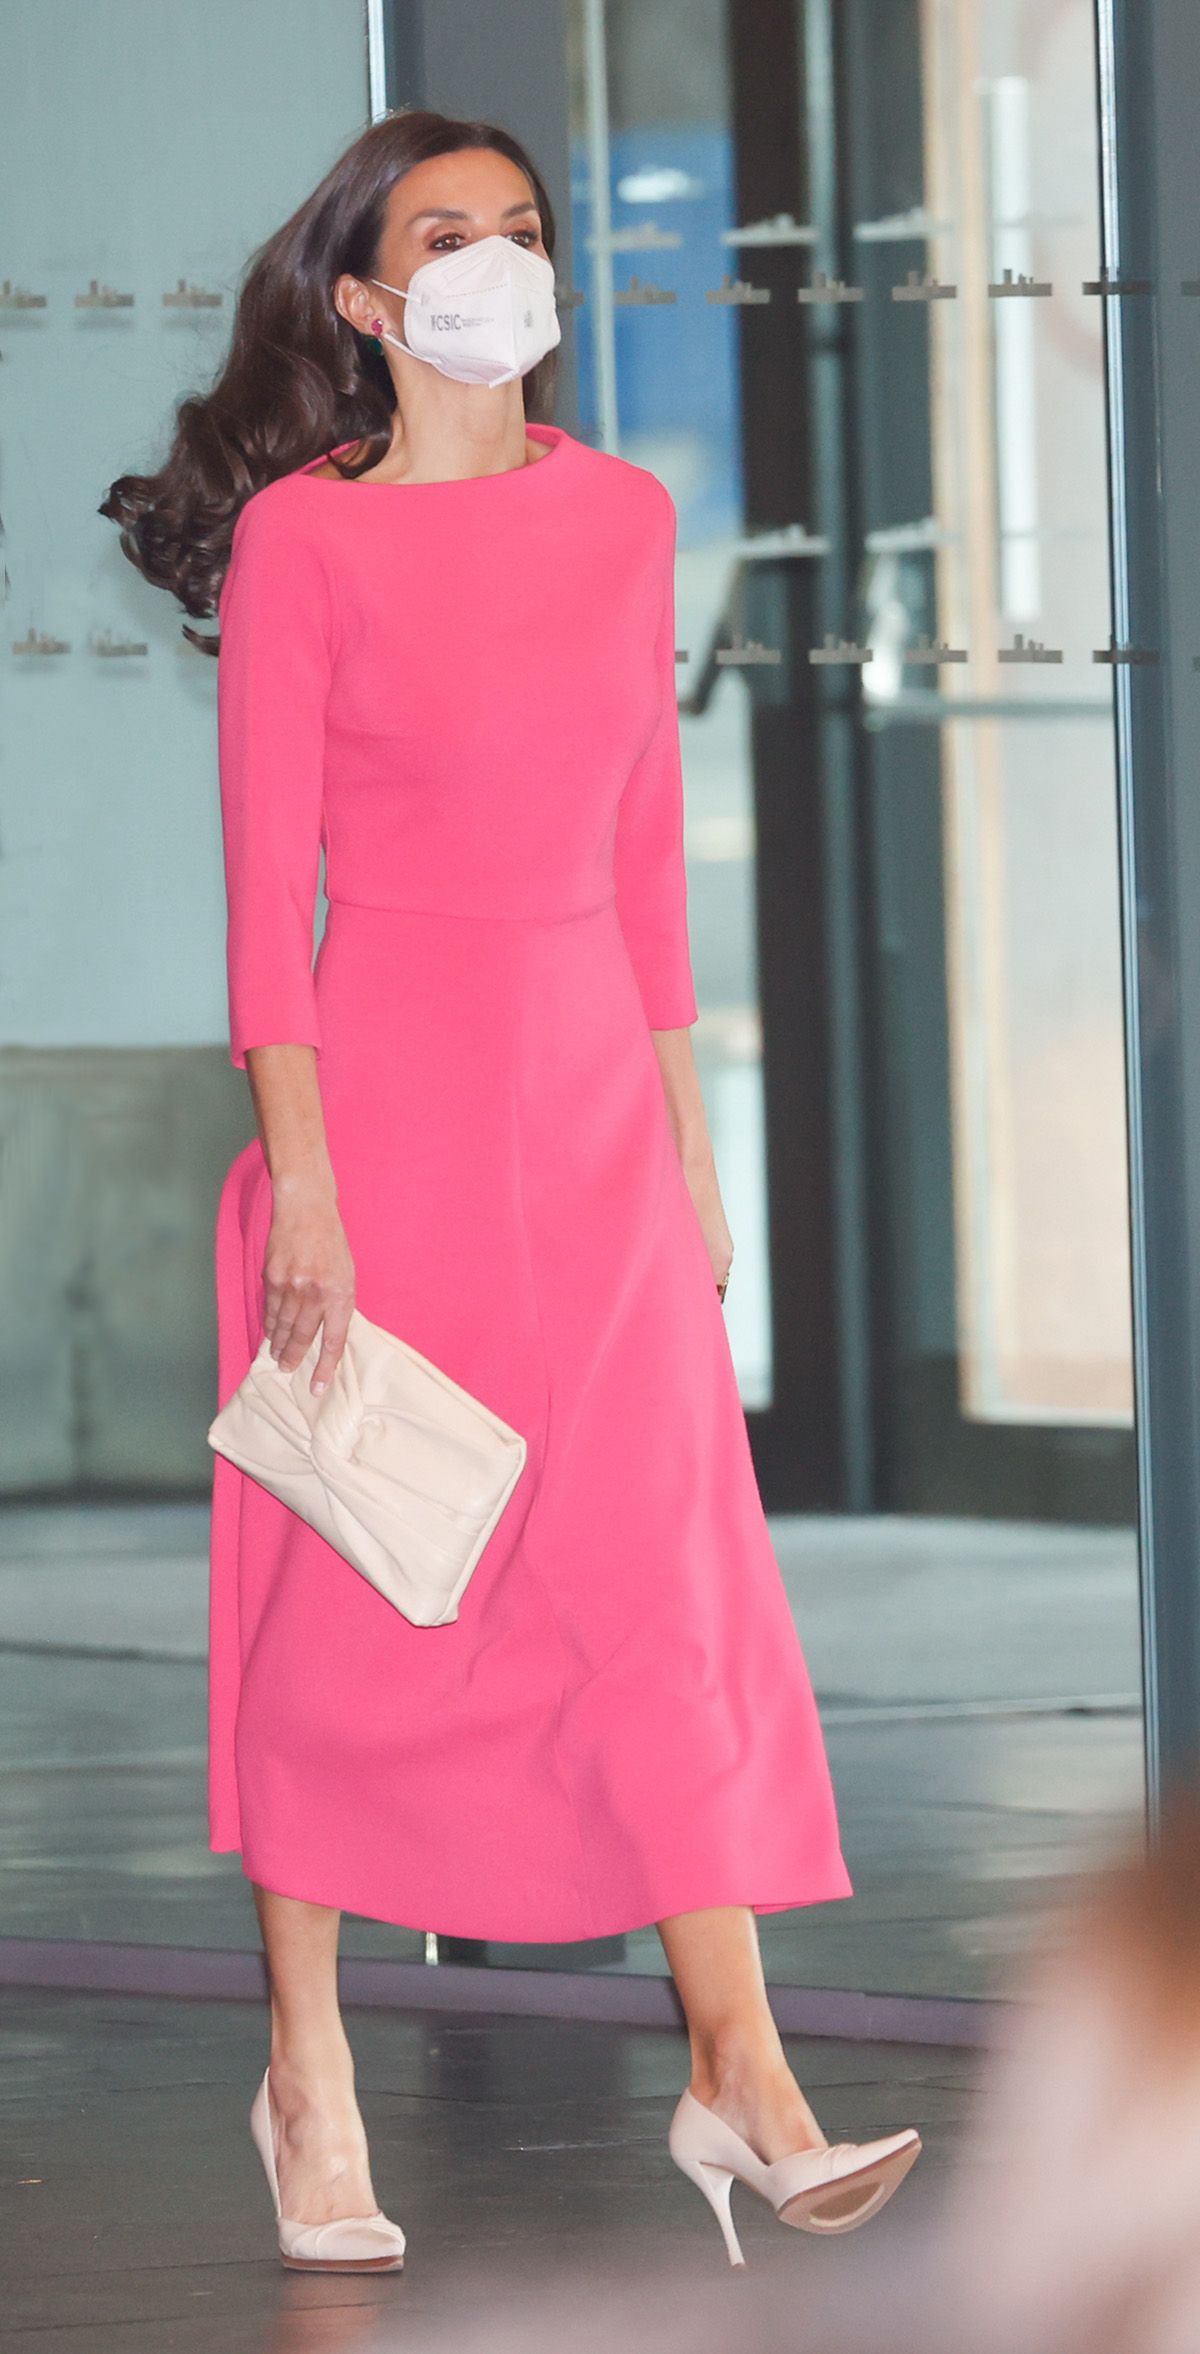 Pólvora máscara barbería La reina Letizia y su pasión por los vestidos rosas